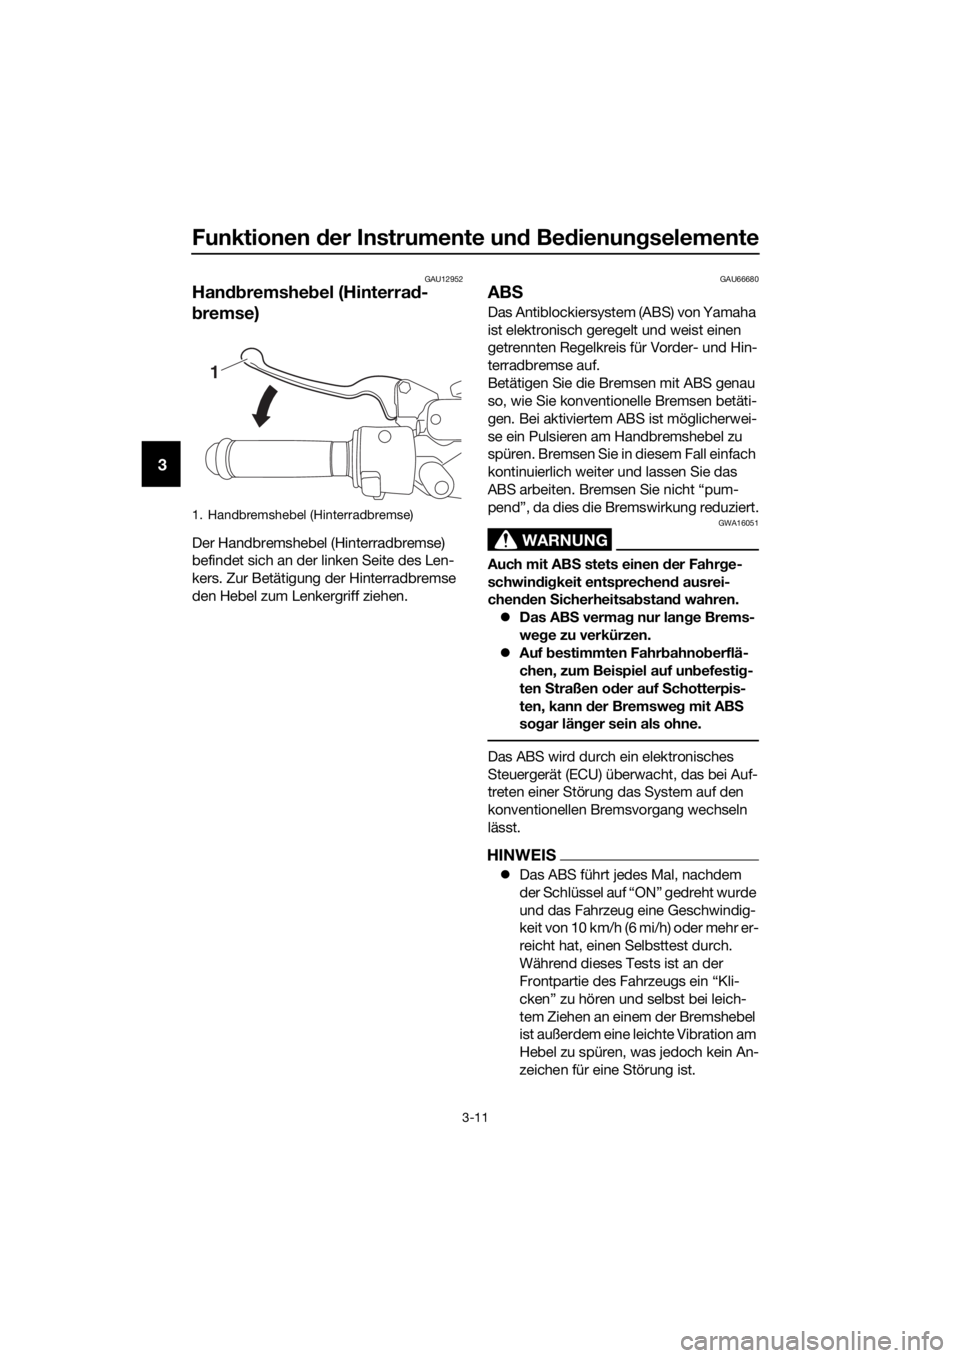 YAMAHA NMAX 125 2016  Betriebsanleitungen (in German) Funktionen der Instrumente un d Be dienung selemente
3-11
3
GAU12952
Handbremshe bel (Hinterra d-
b remse)
Der Handbremshebel (Hinterradbremse) 
befindet sich an der linken Seite des Len-
kers. Zur Be